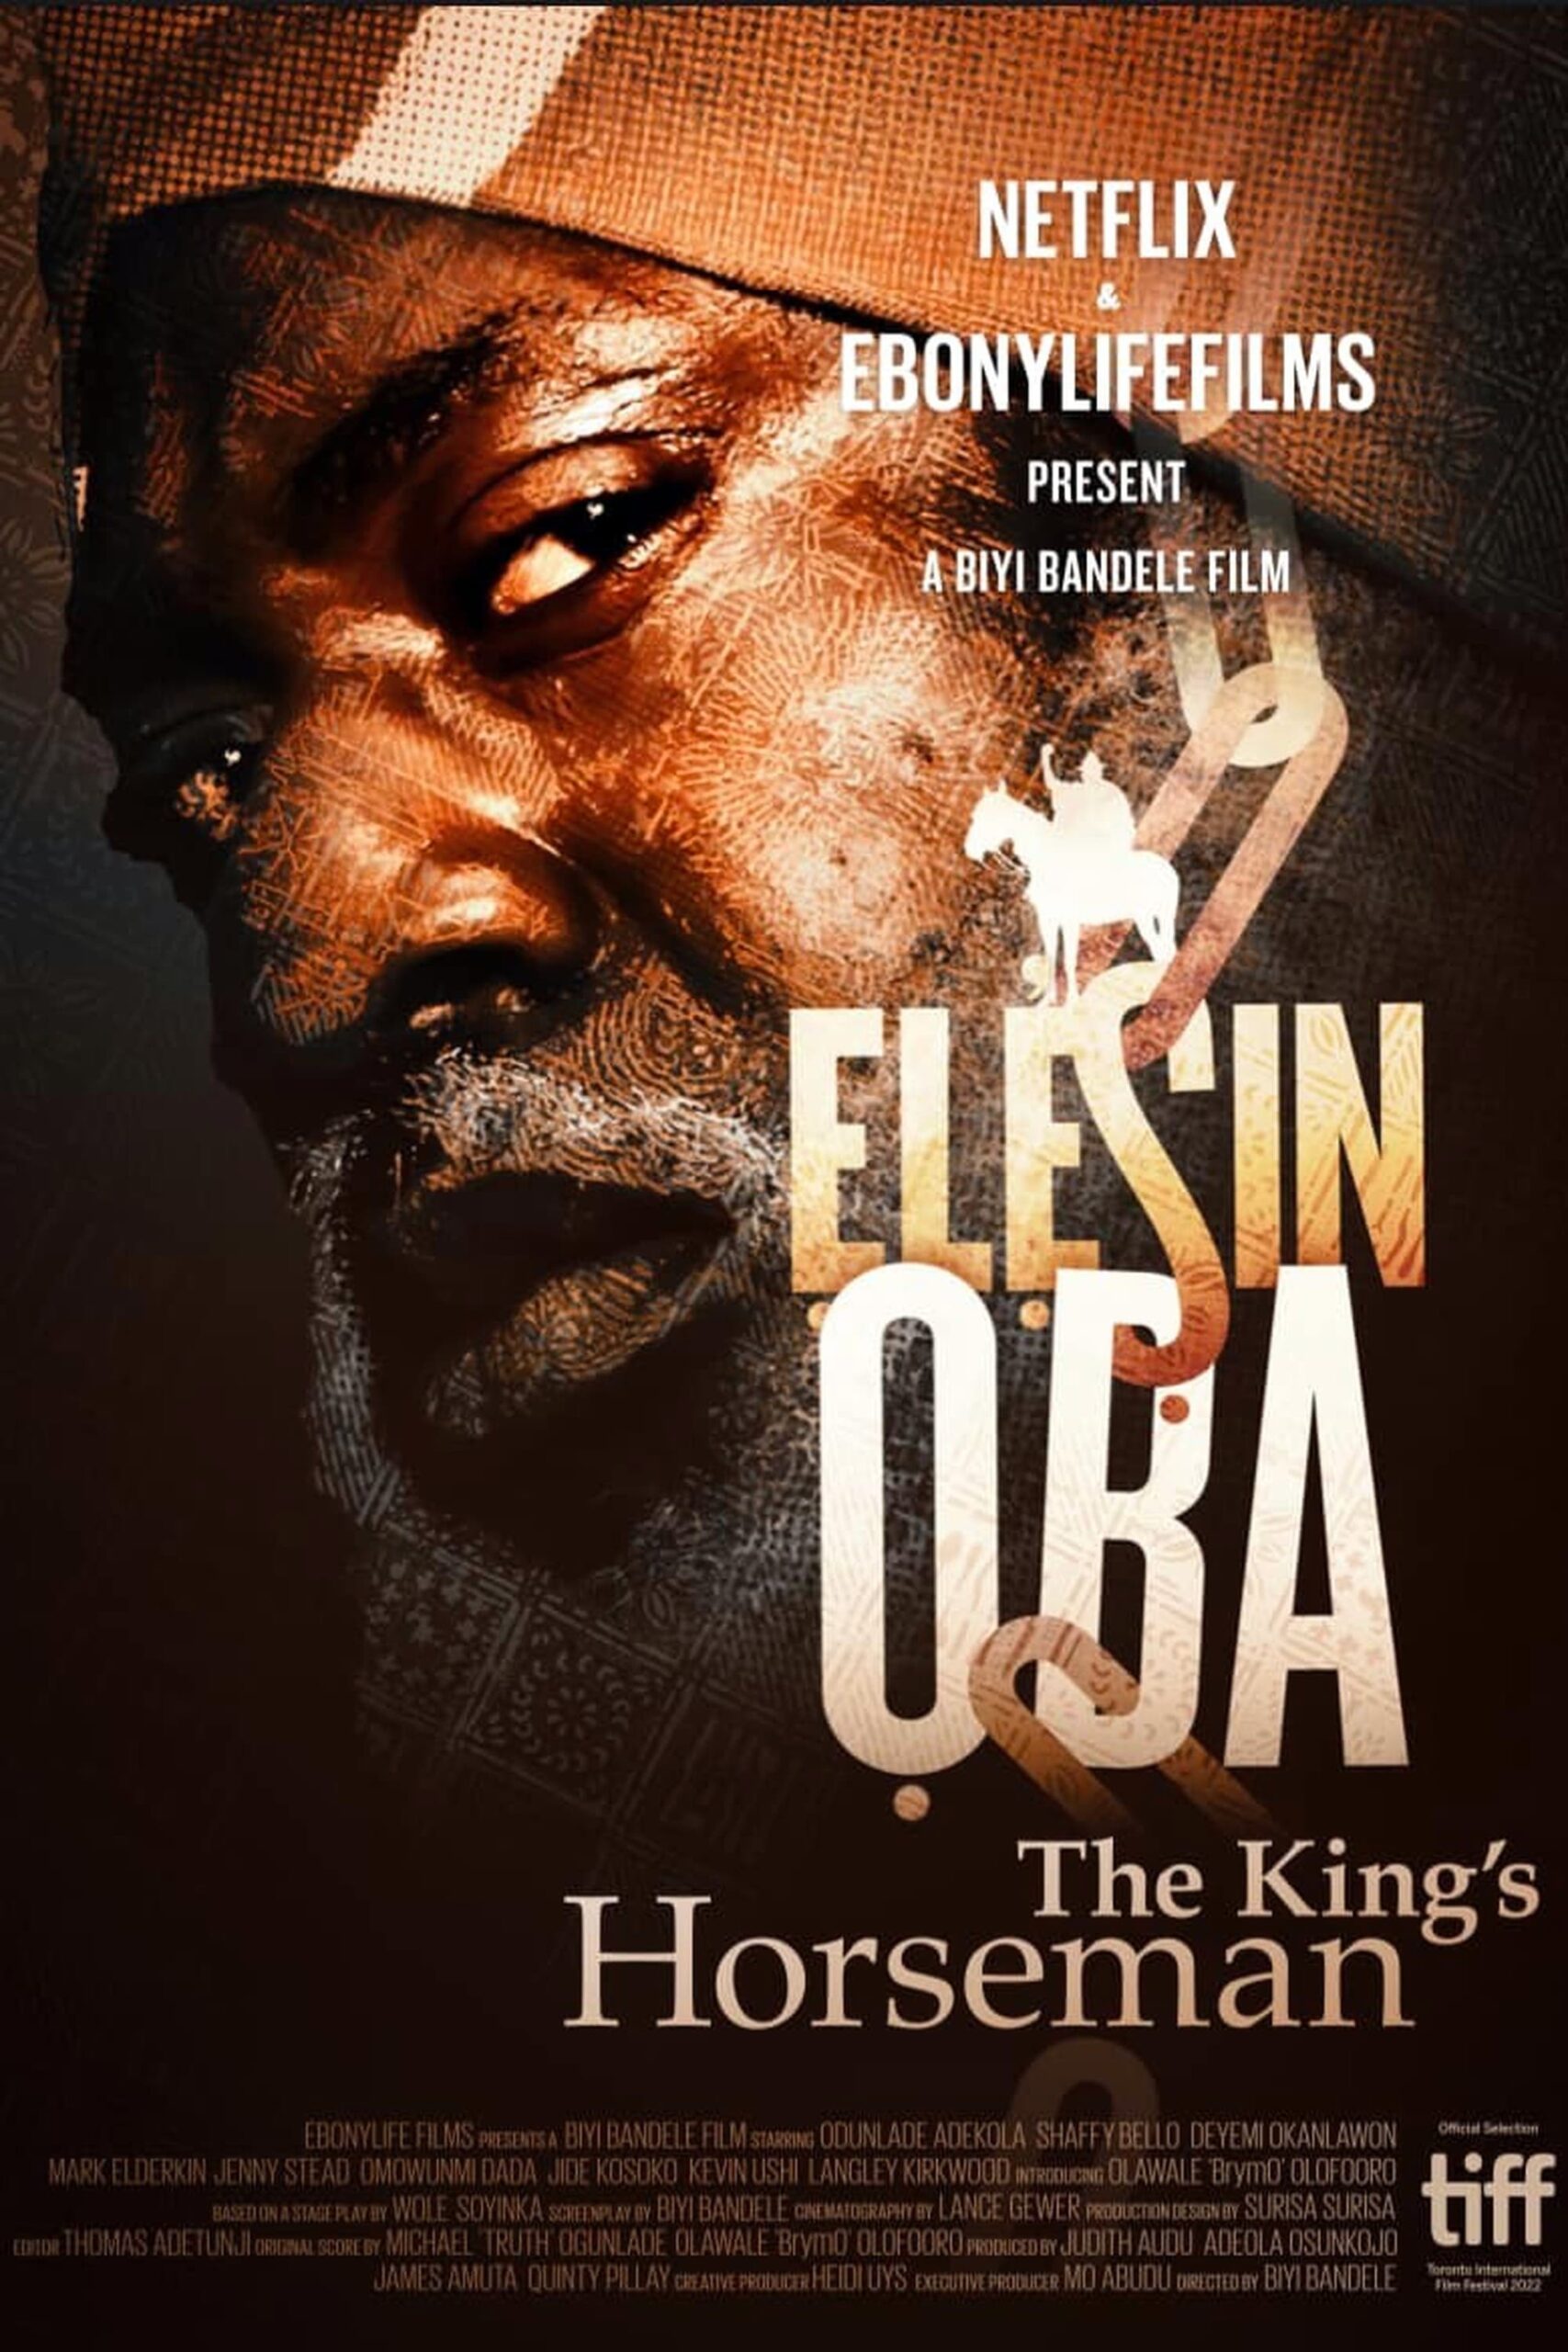 Elesin Oba: The King's Horseman (2022) ทหารม้าของราชา - SPINNERHD - อัปเดตภาพยนตร์และซีรีส์ใหม่ทุกวัน - ภาพยนตร์สตรีมมิ่งฟรี